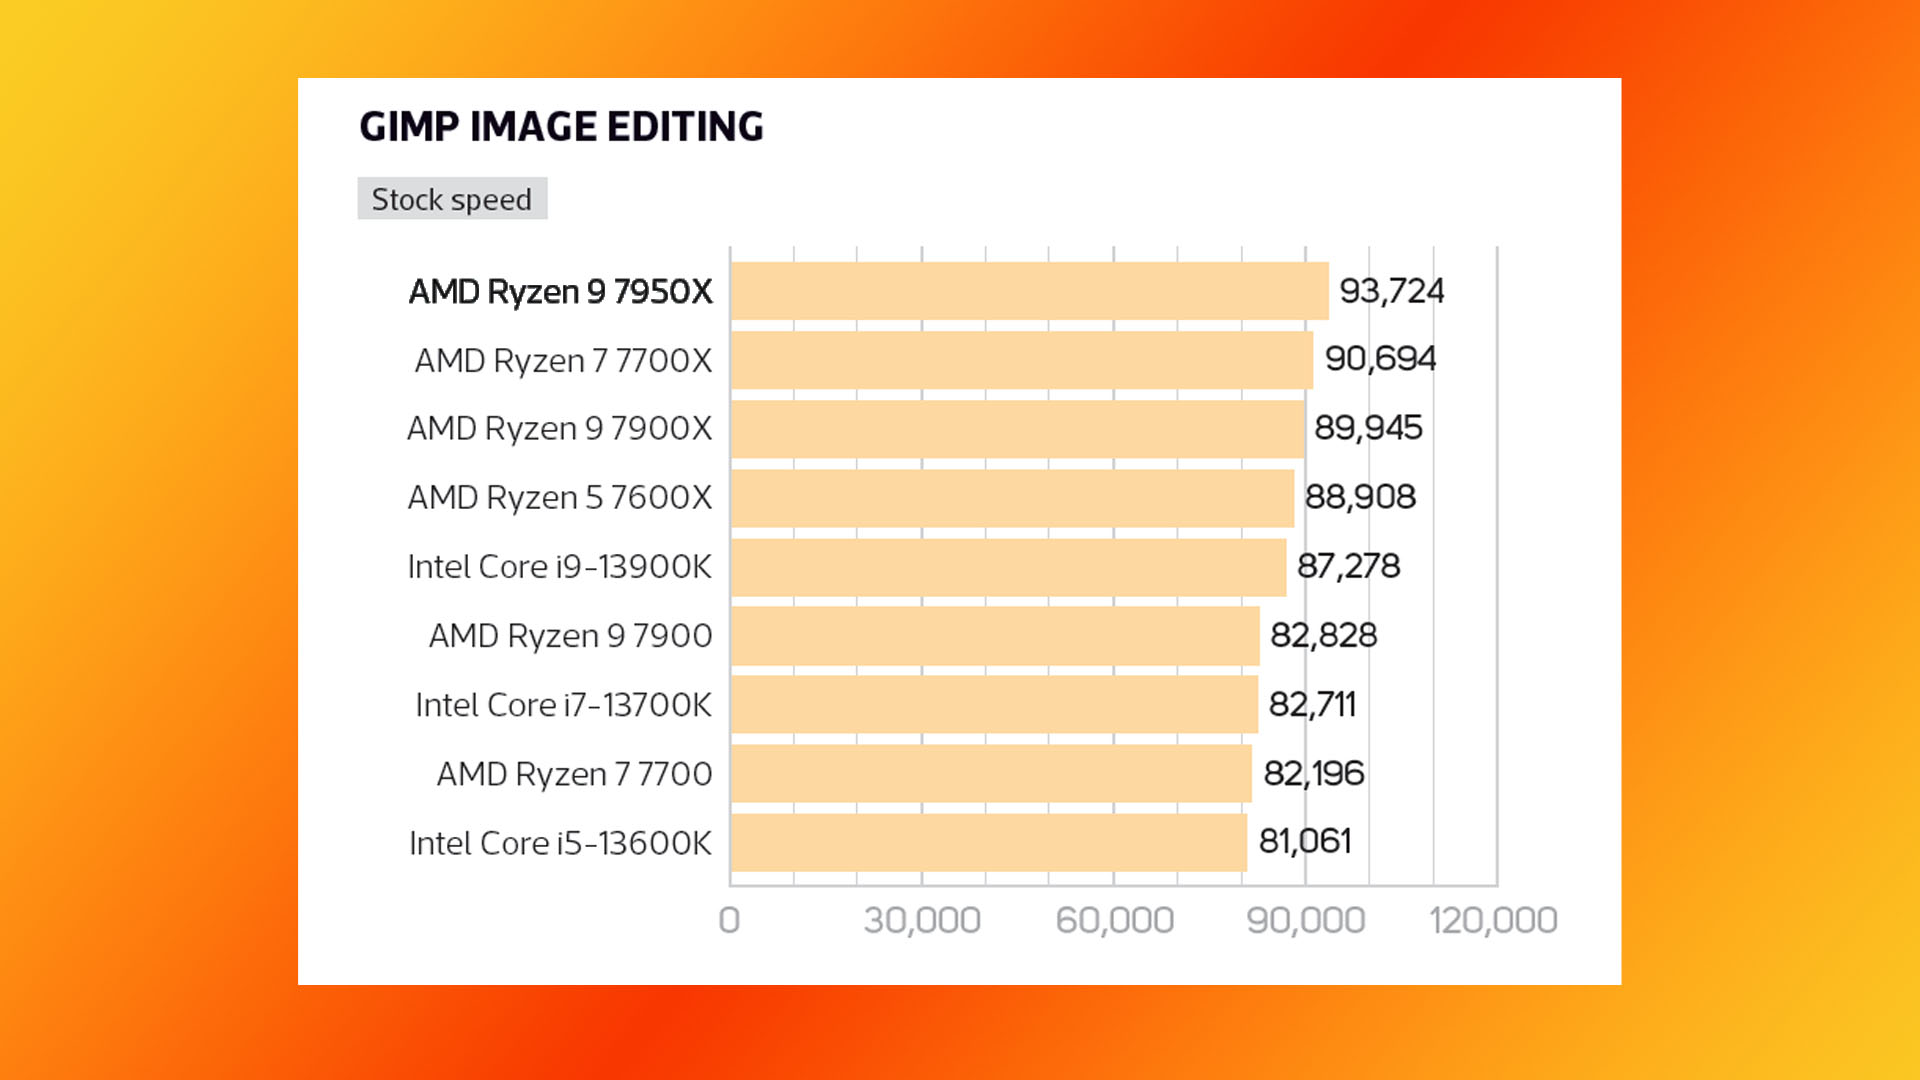 Test AMD Ryzen 9 7950X : graphique des résultats du test d'édition d'images GIMP